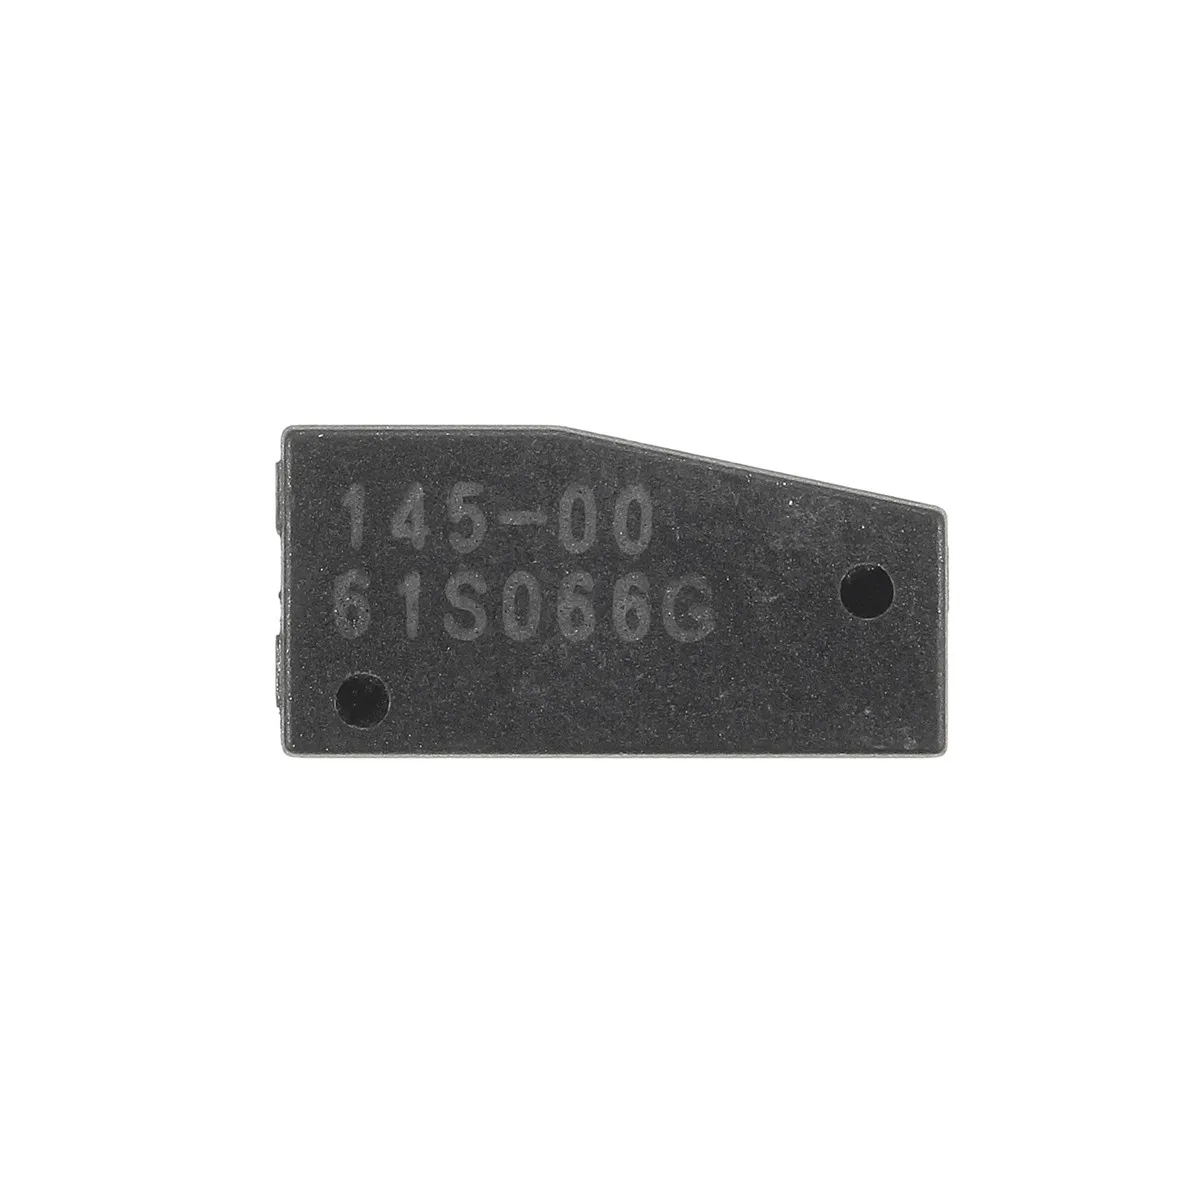 10 шт. автомобиль дистанционного ключа чипы ID60 4D60 80 бит углеродный транспондер для ford для Nissan Bluebird Sylphy MITSUBISHI RENAULT коробка передач